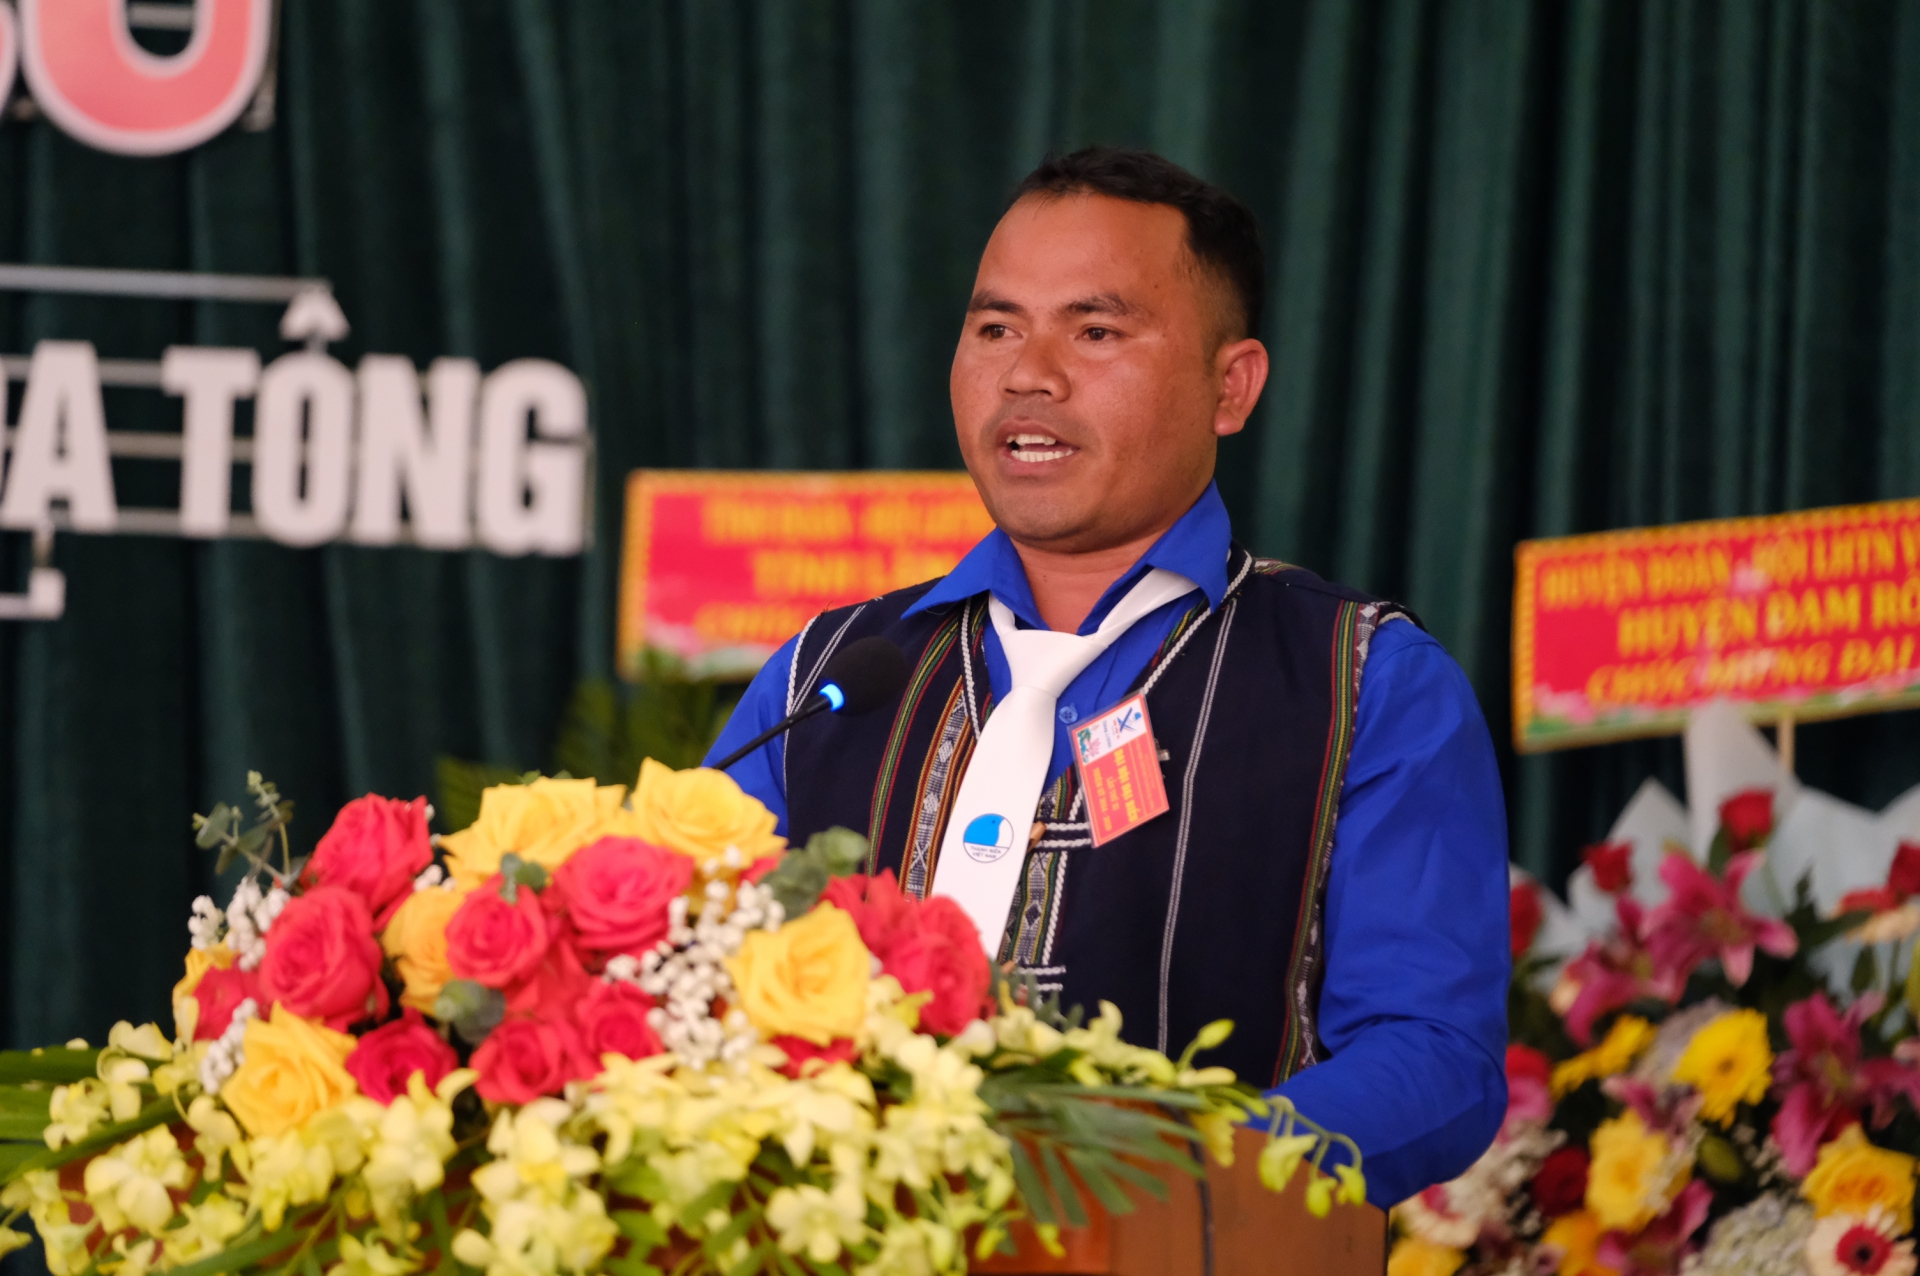 Đồng chí Liêng Hot Ha Ngát – Chủ tịch Hội LHTN xã Đạ Tông nhiệm kỳ 20219 – 2024 báo cáo kết quả thực hiện nhiệm vụ nhiệm kỳ qua